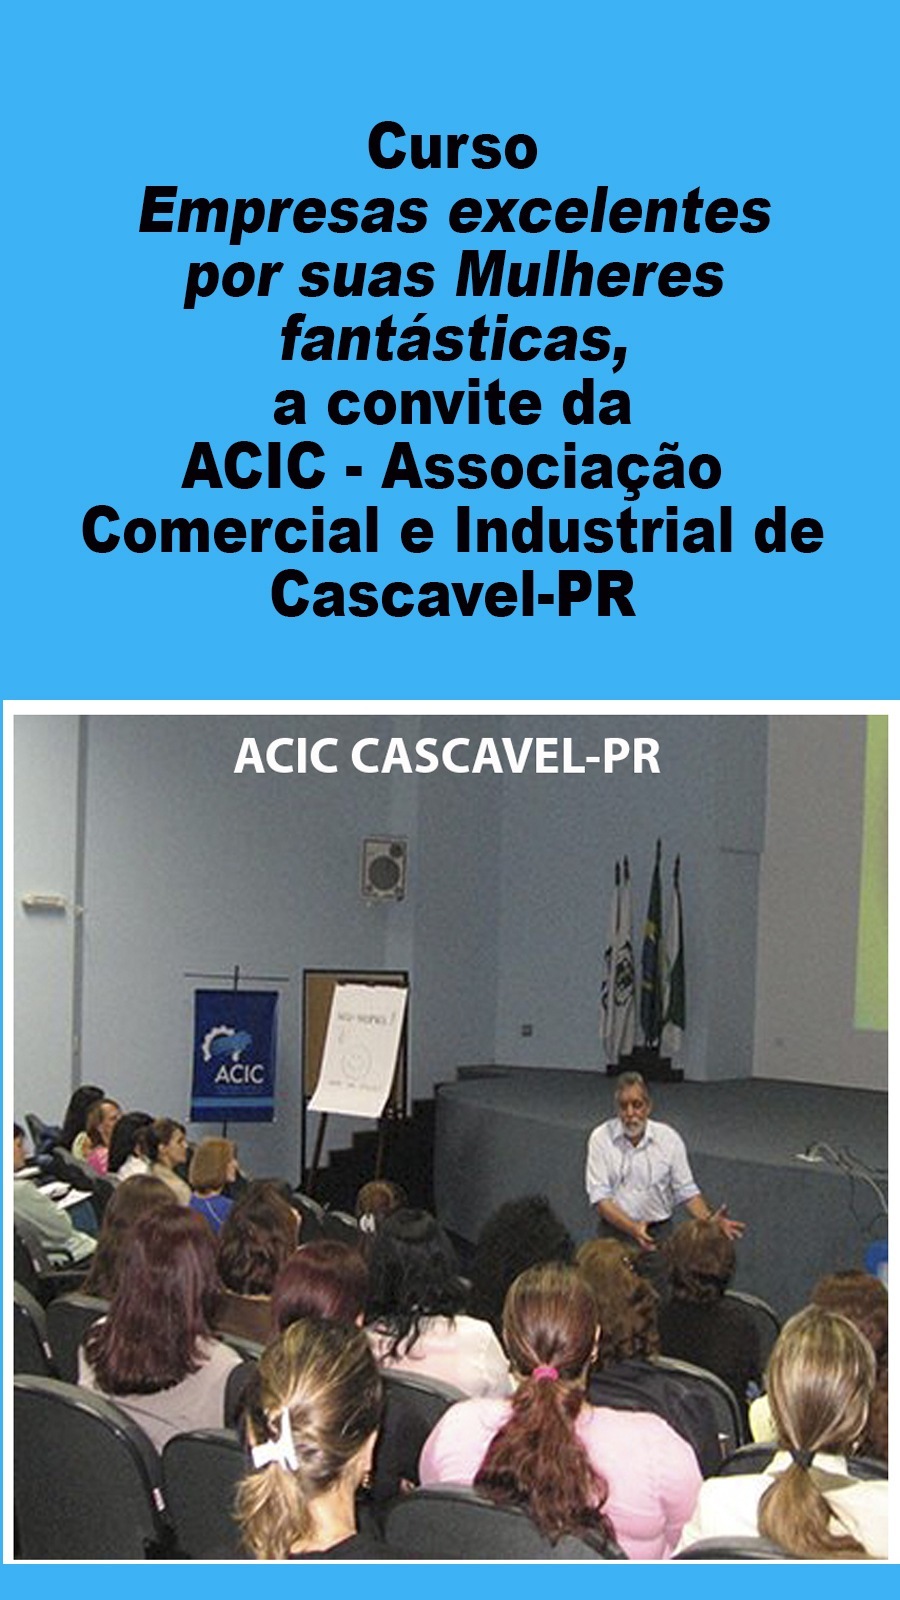 Curso
Empresas excelentes
por suas Mulheres
fantasticas,

a convite da
ACIC - Associacao
Comercial e Industrial de
Cascavel-PR